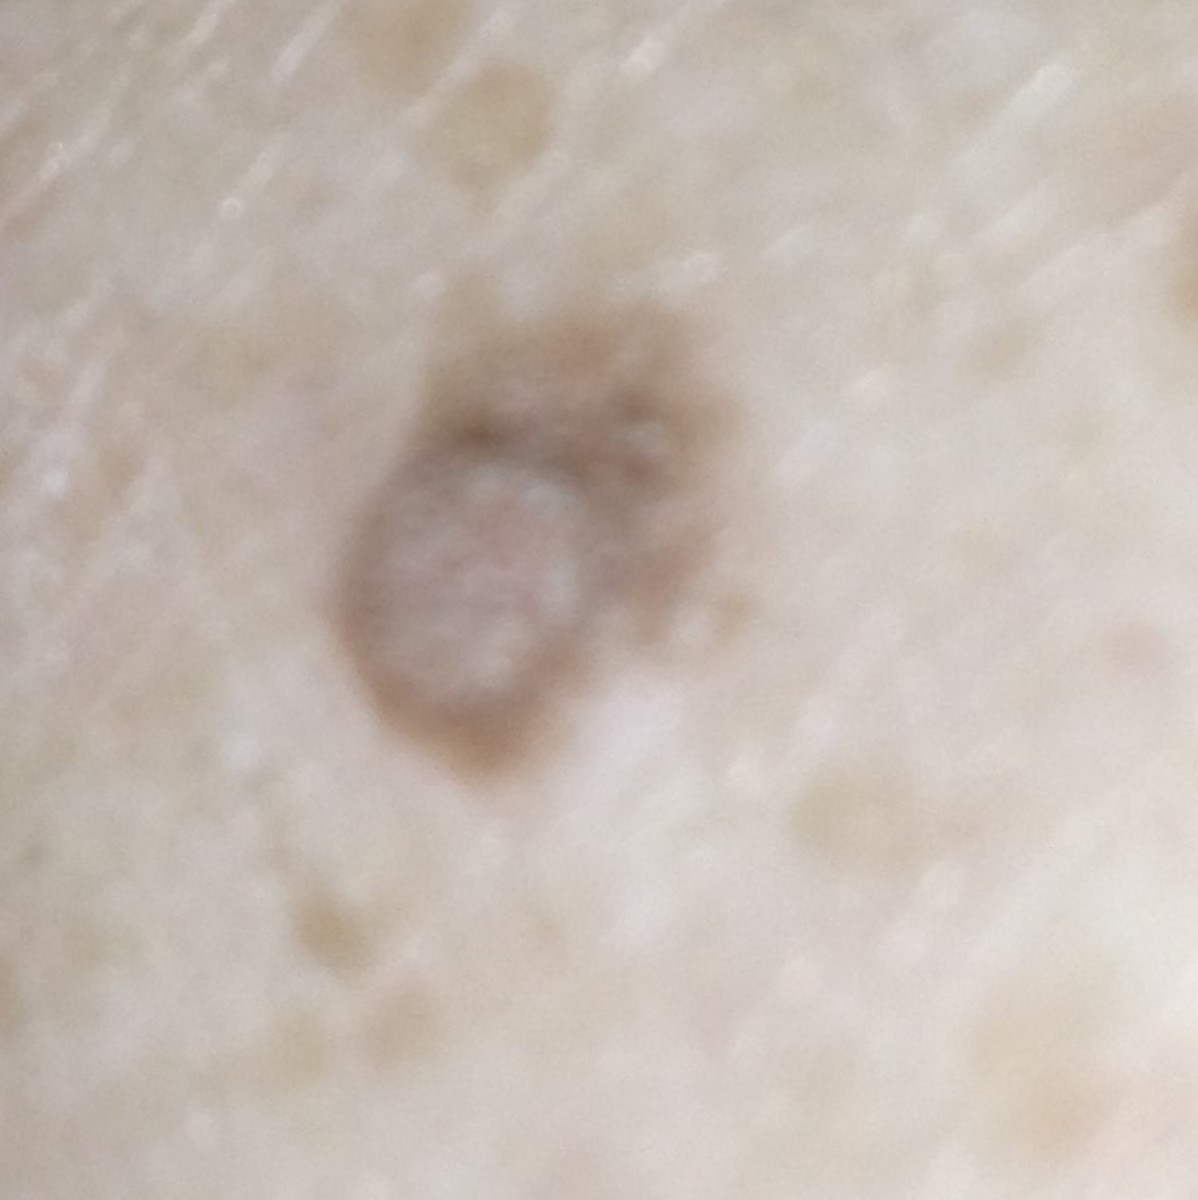 Skin Cancer Found